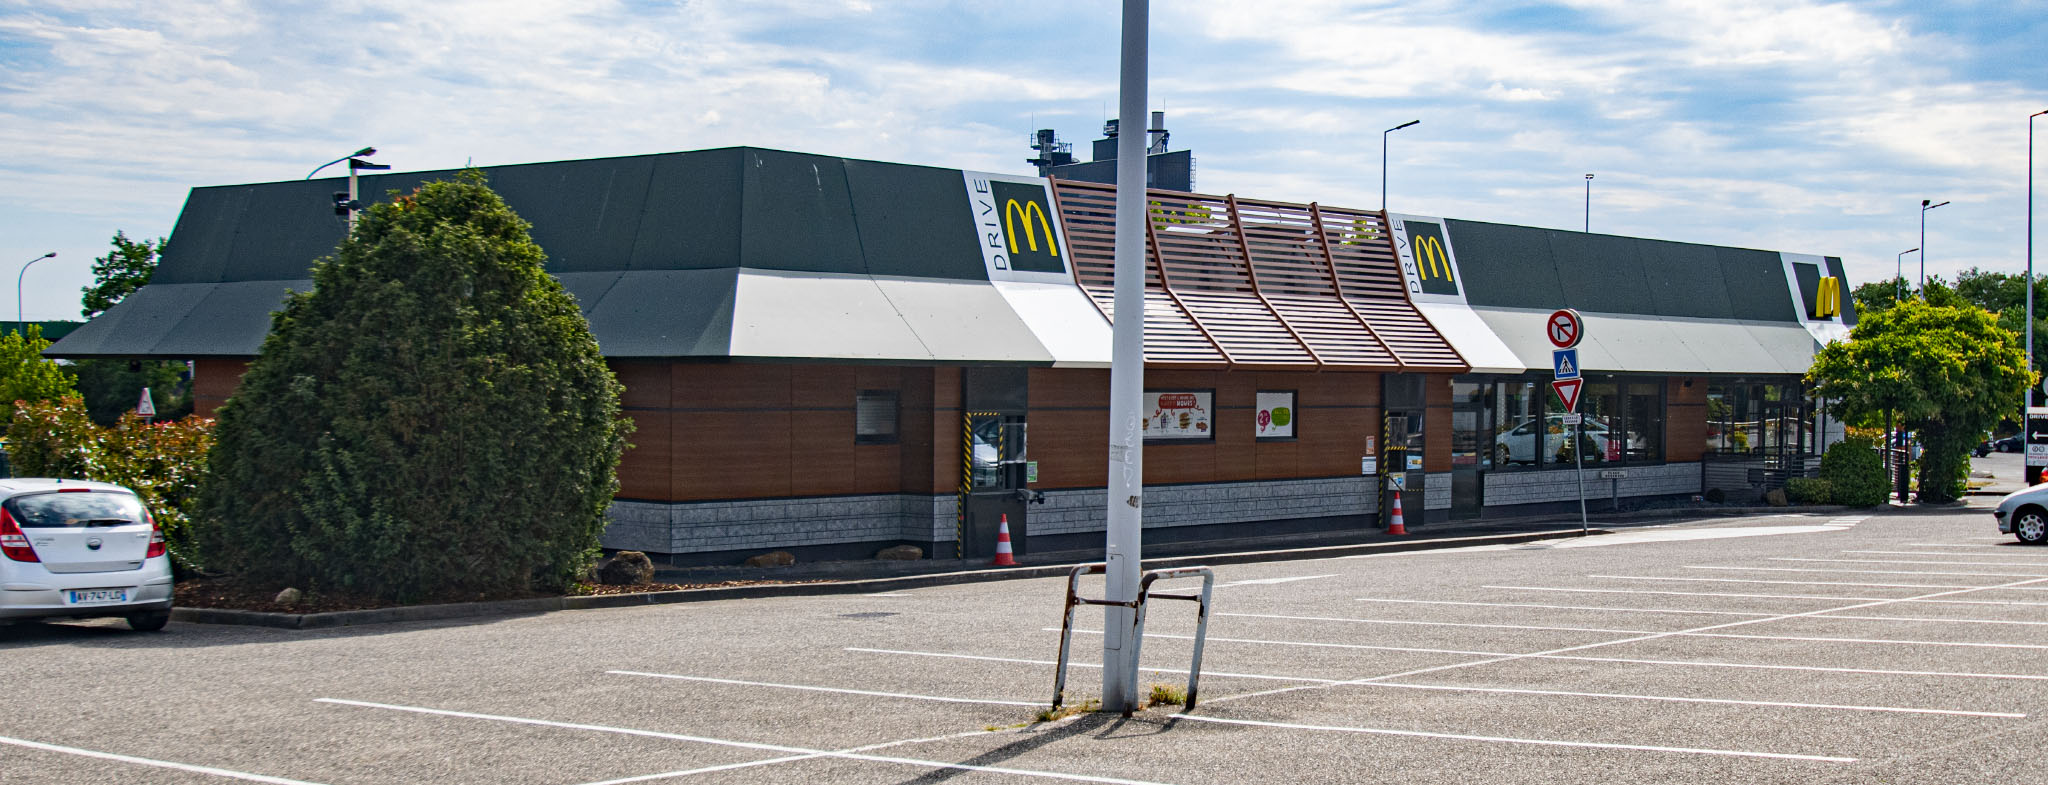 Das McDonald’s-Restaurant in Brumath